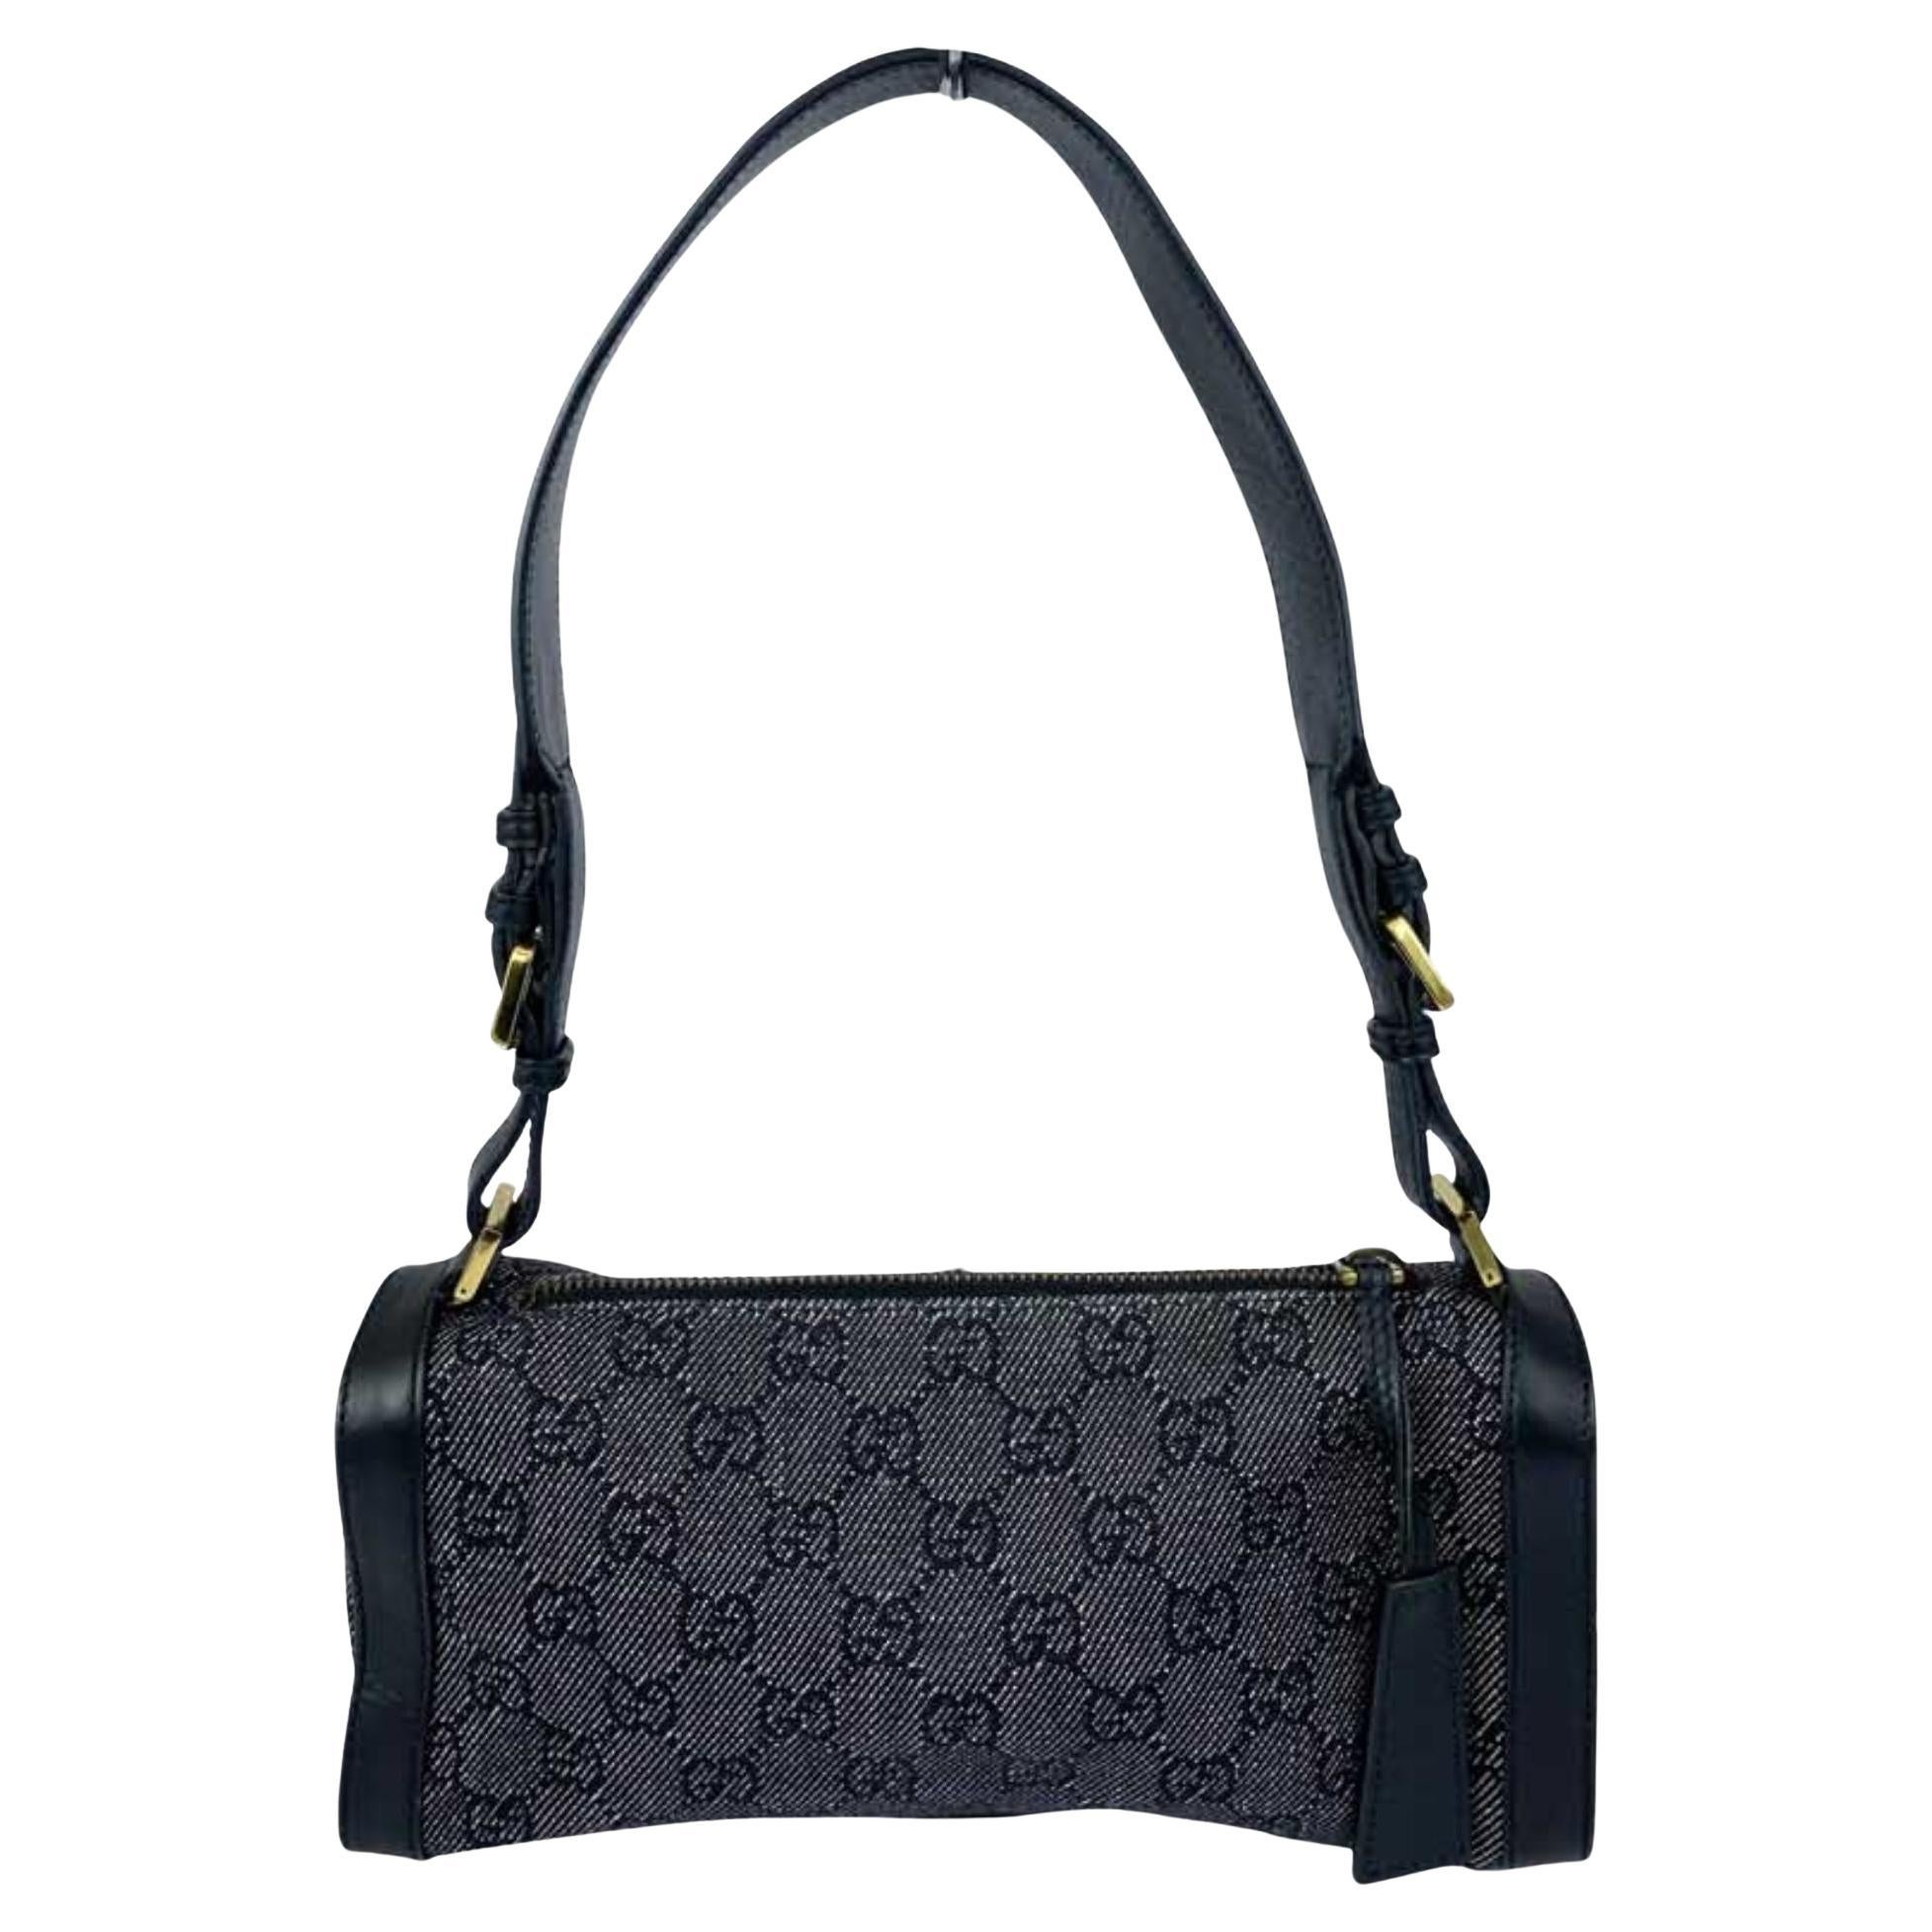 Gucci Charcoal Grey Canvas Shoulder Bag